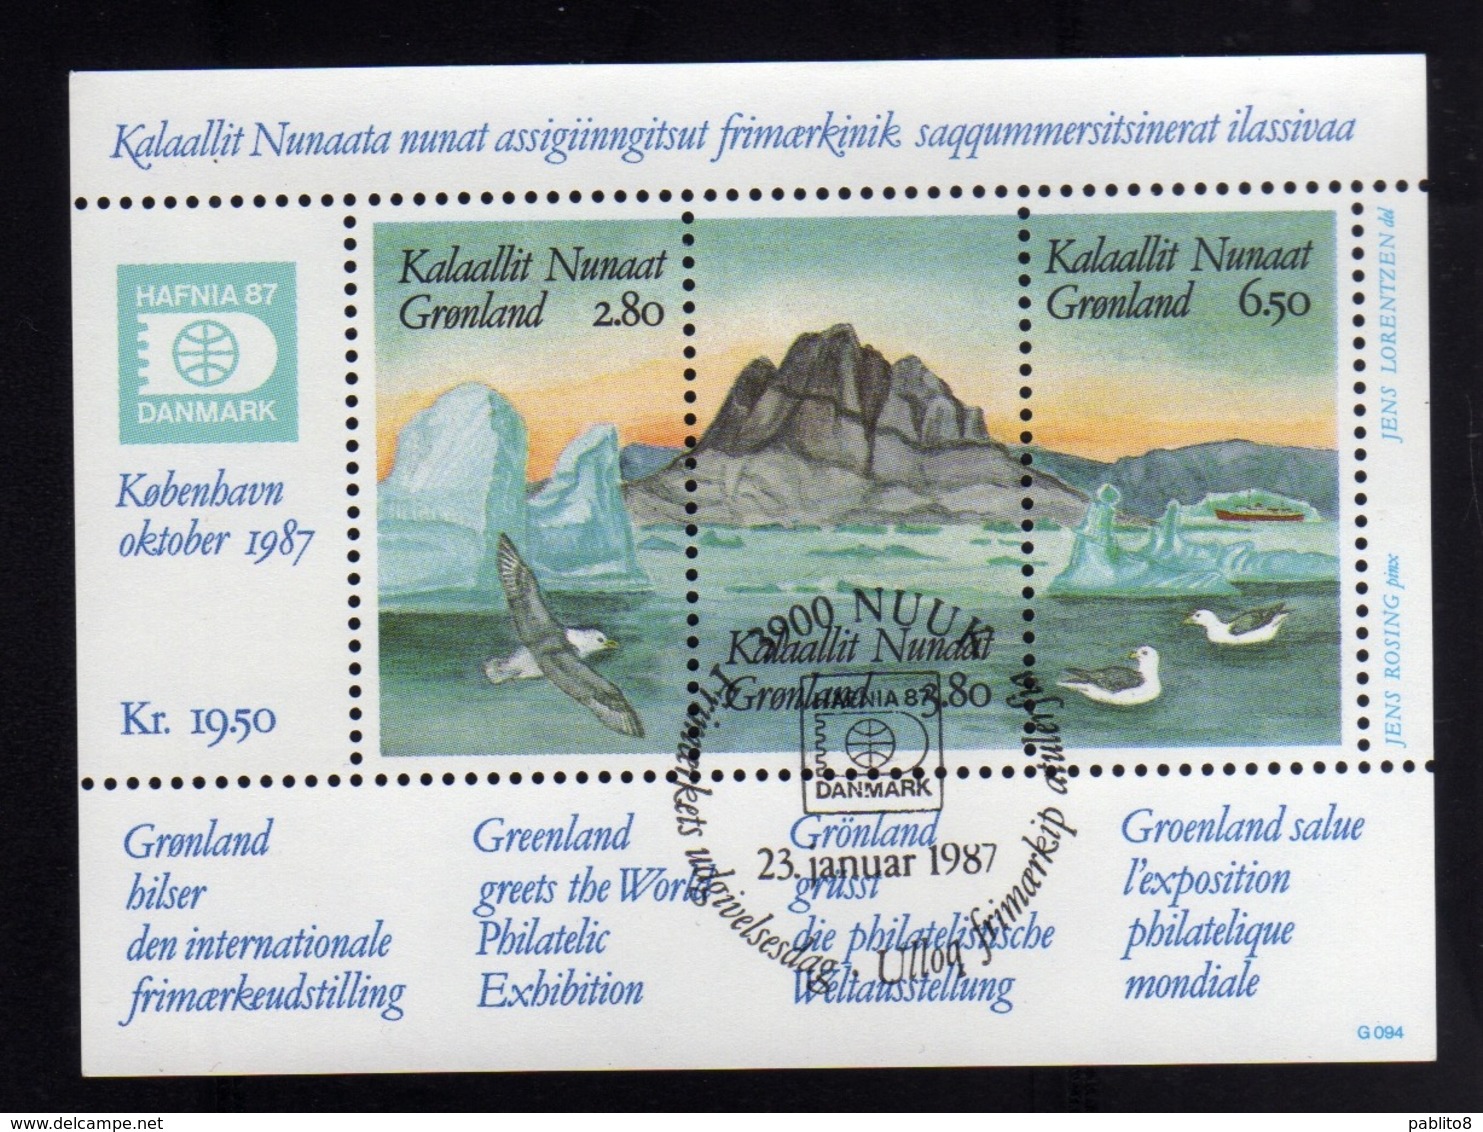 GREENLAND GRONLANDS GROENLANDIA GRØNLAND 1987 HAFNIA 87 Stamp Exhibition PHILATELIC SHEET FOGLIETTO FIRST DAY CANCEL FDC - Blokken